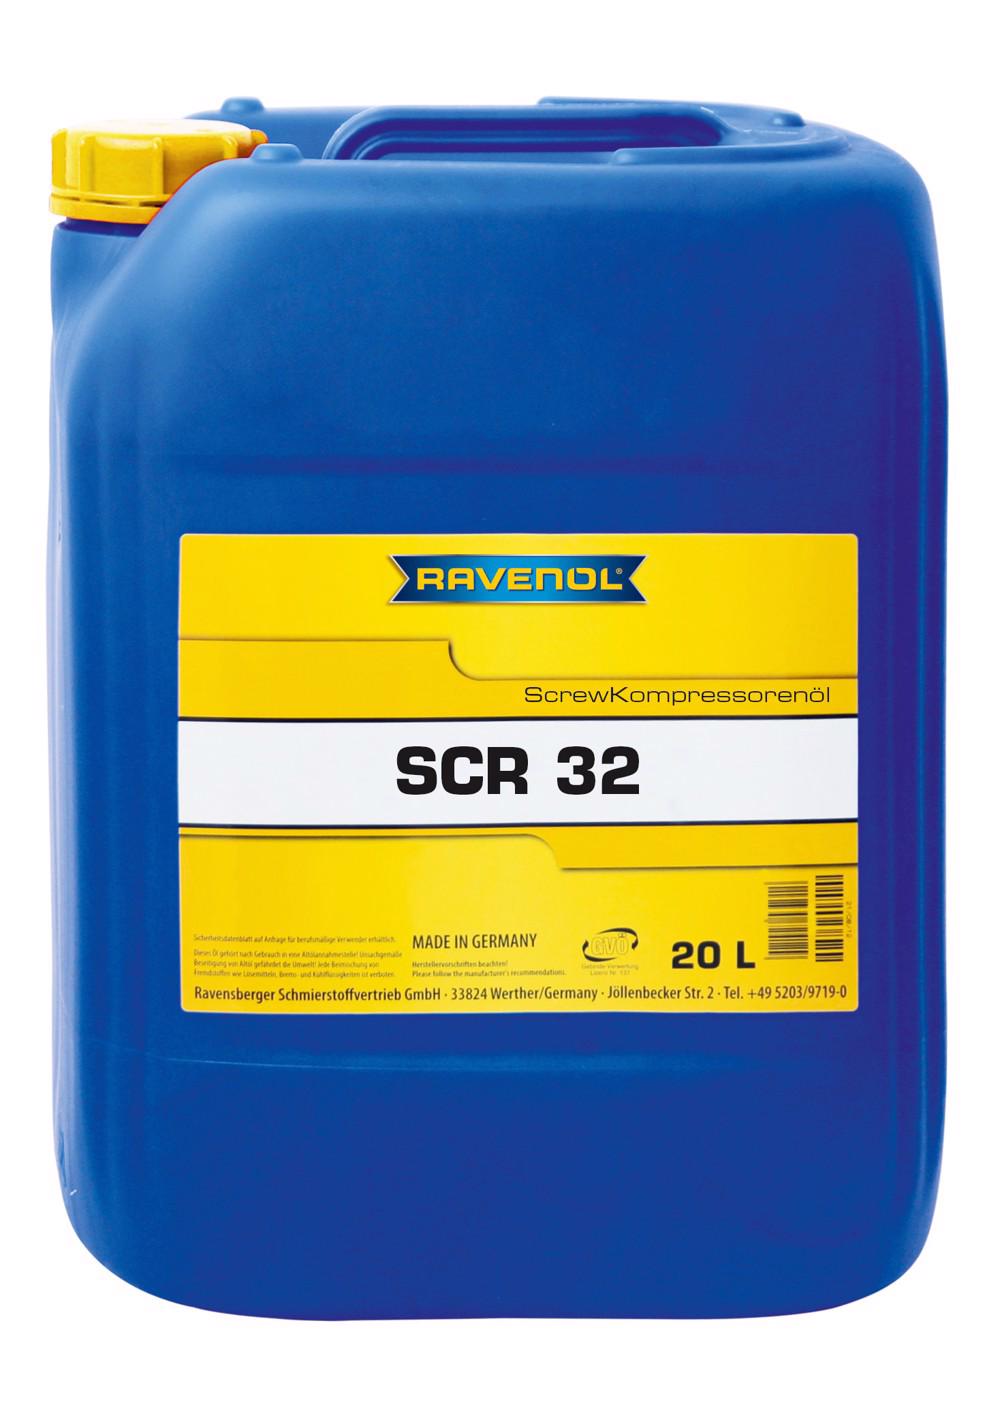 RAV  SCR 32 Screw Kompressorenoel  20 L